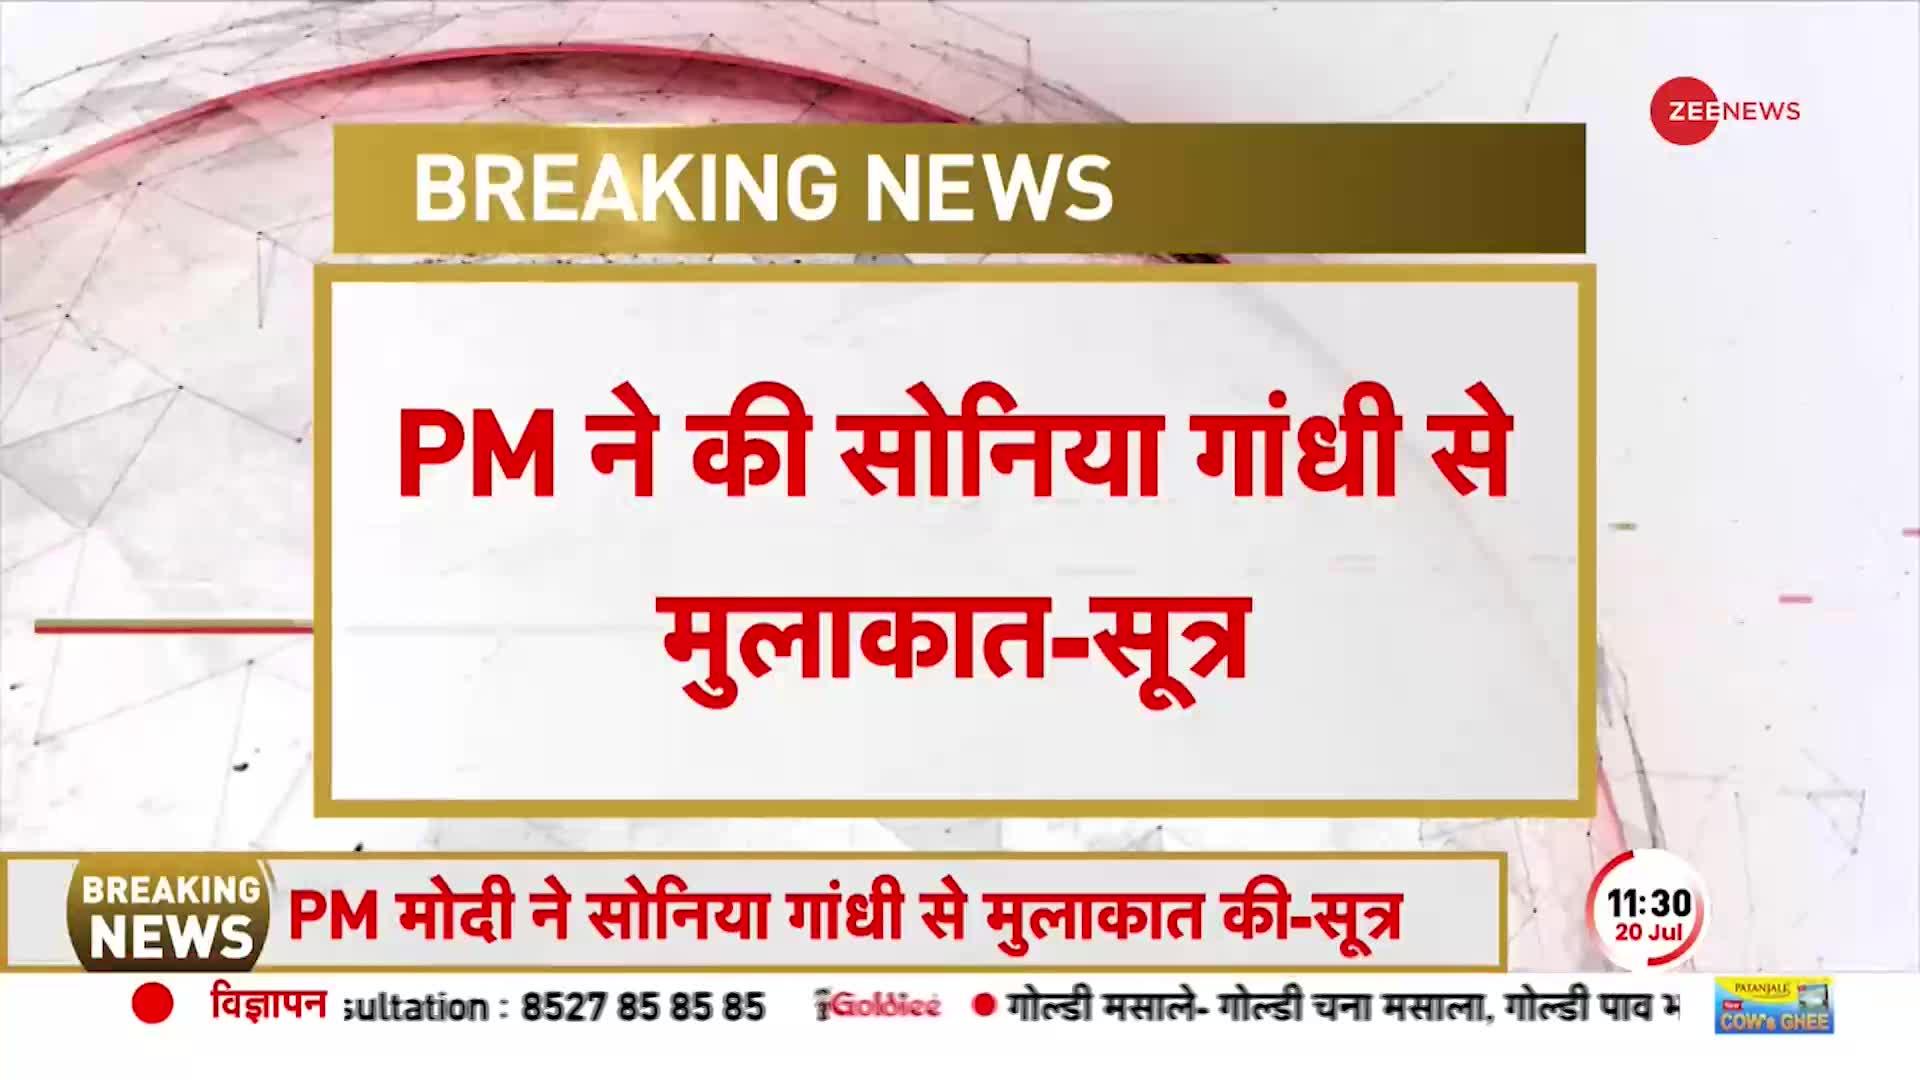 PM Modi ने Sonia Gandhi से मिलकर जाना हाल, विमान की हुई थी Emergency Landing